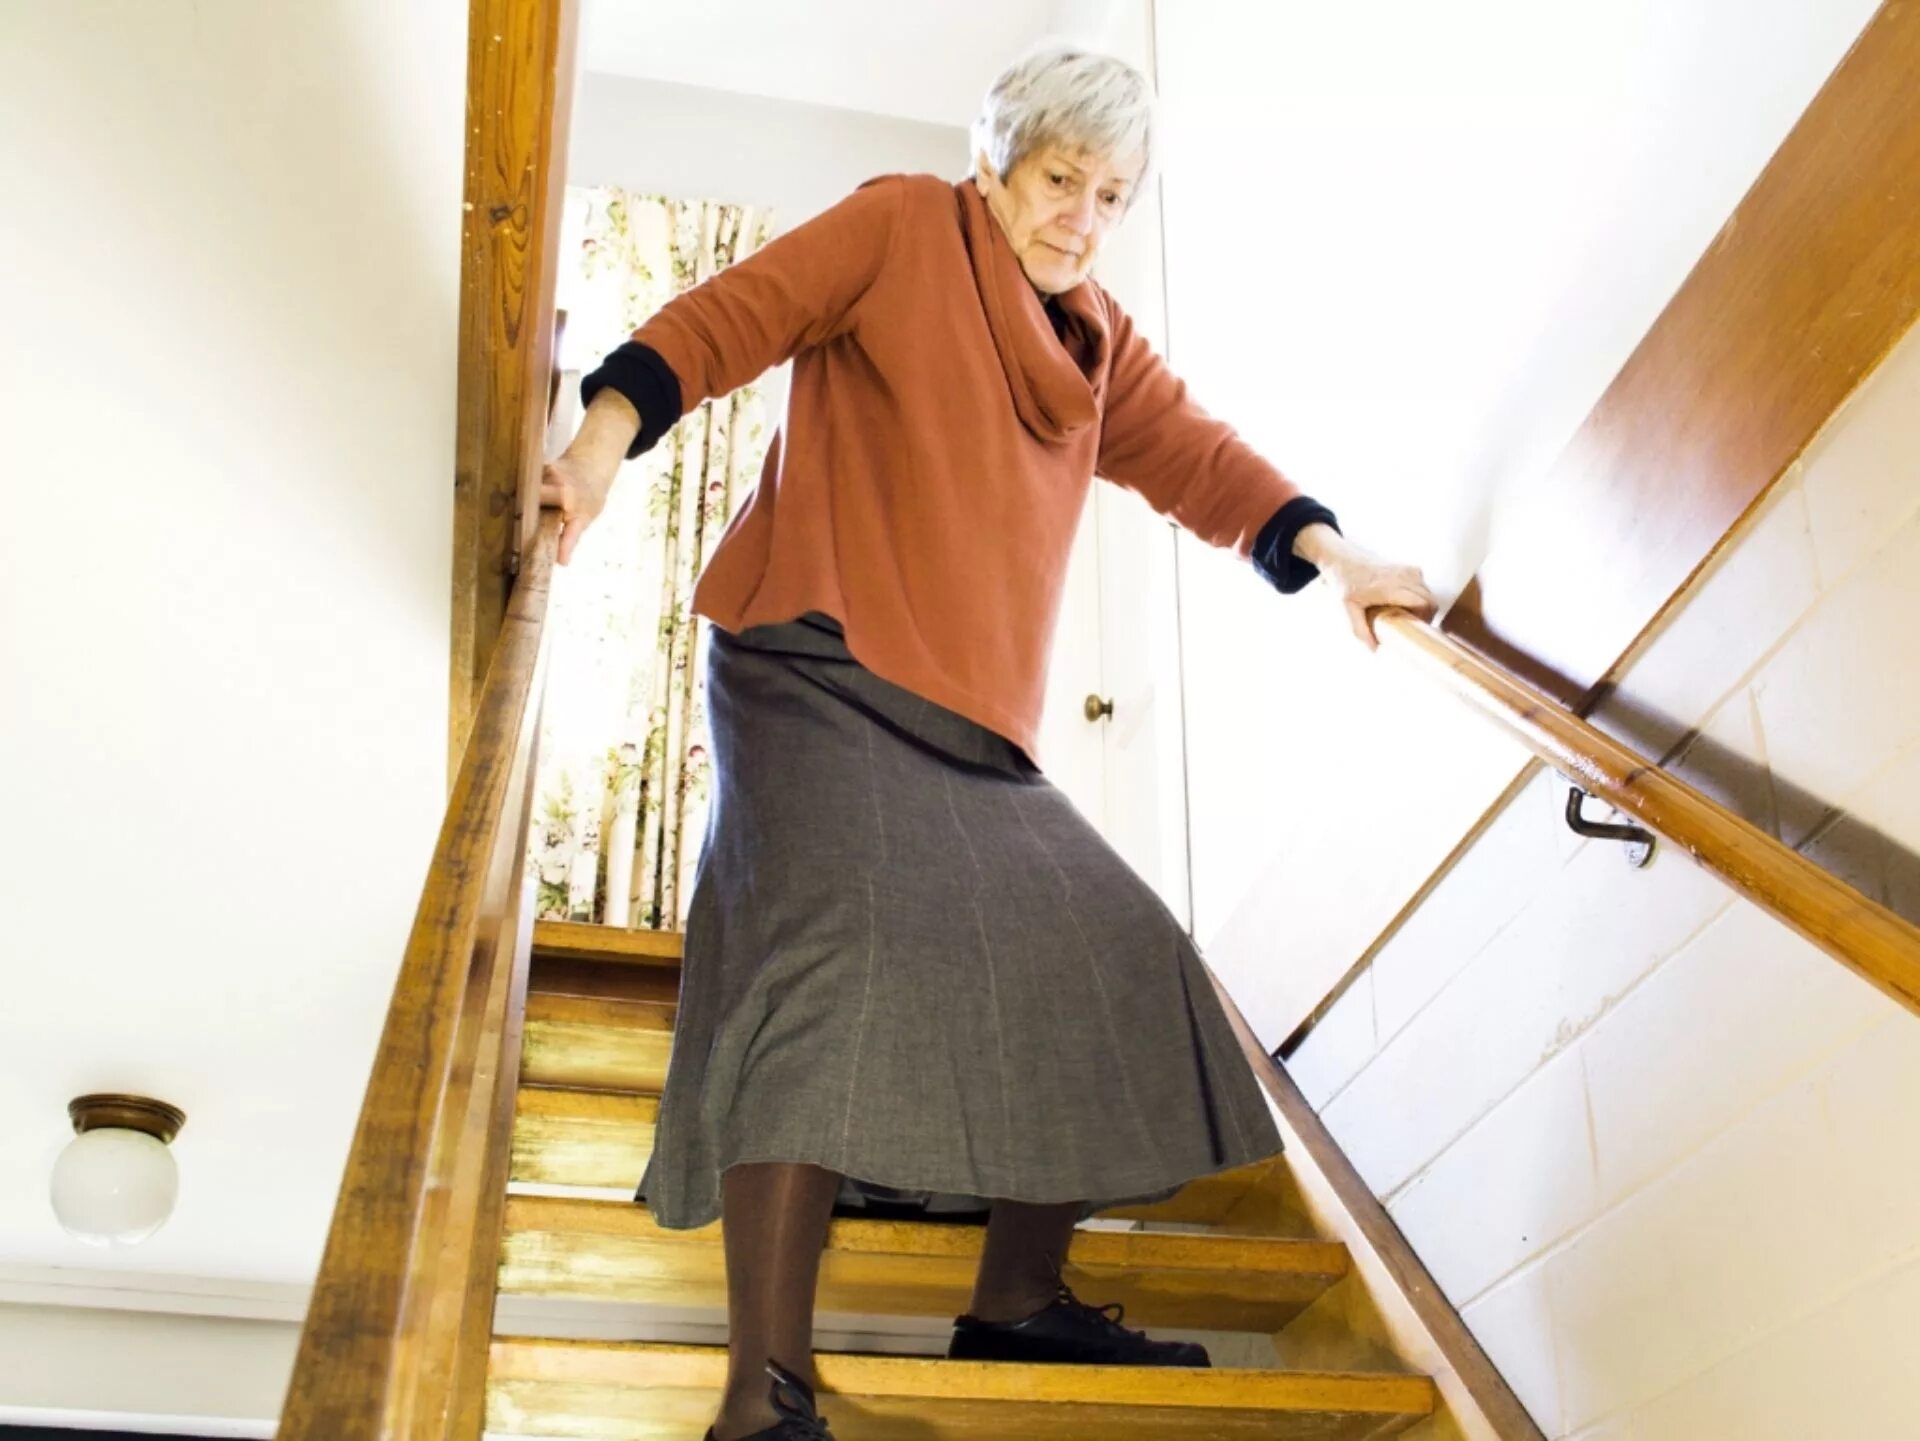 Бабушка снизу. Лестница для пожилых людей. Бабушка на лестнице. Спускается по лестнице пожилая женщина. Травматизм пожилых людей.